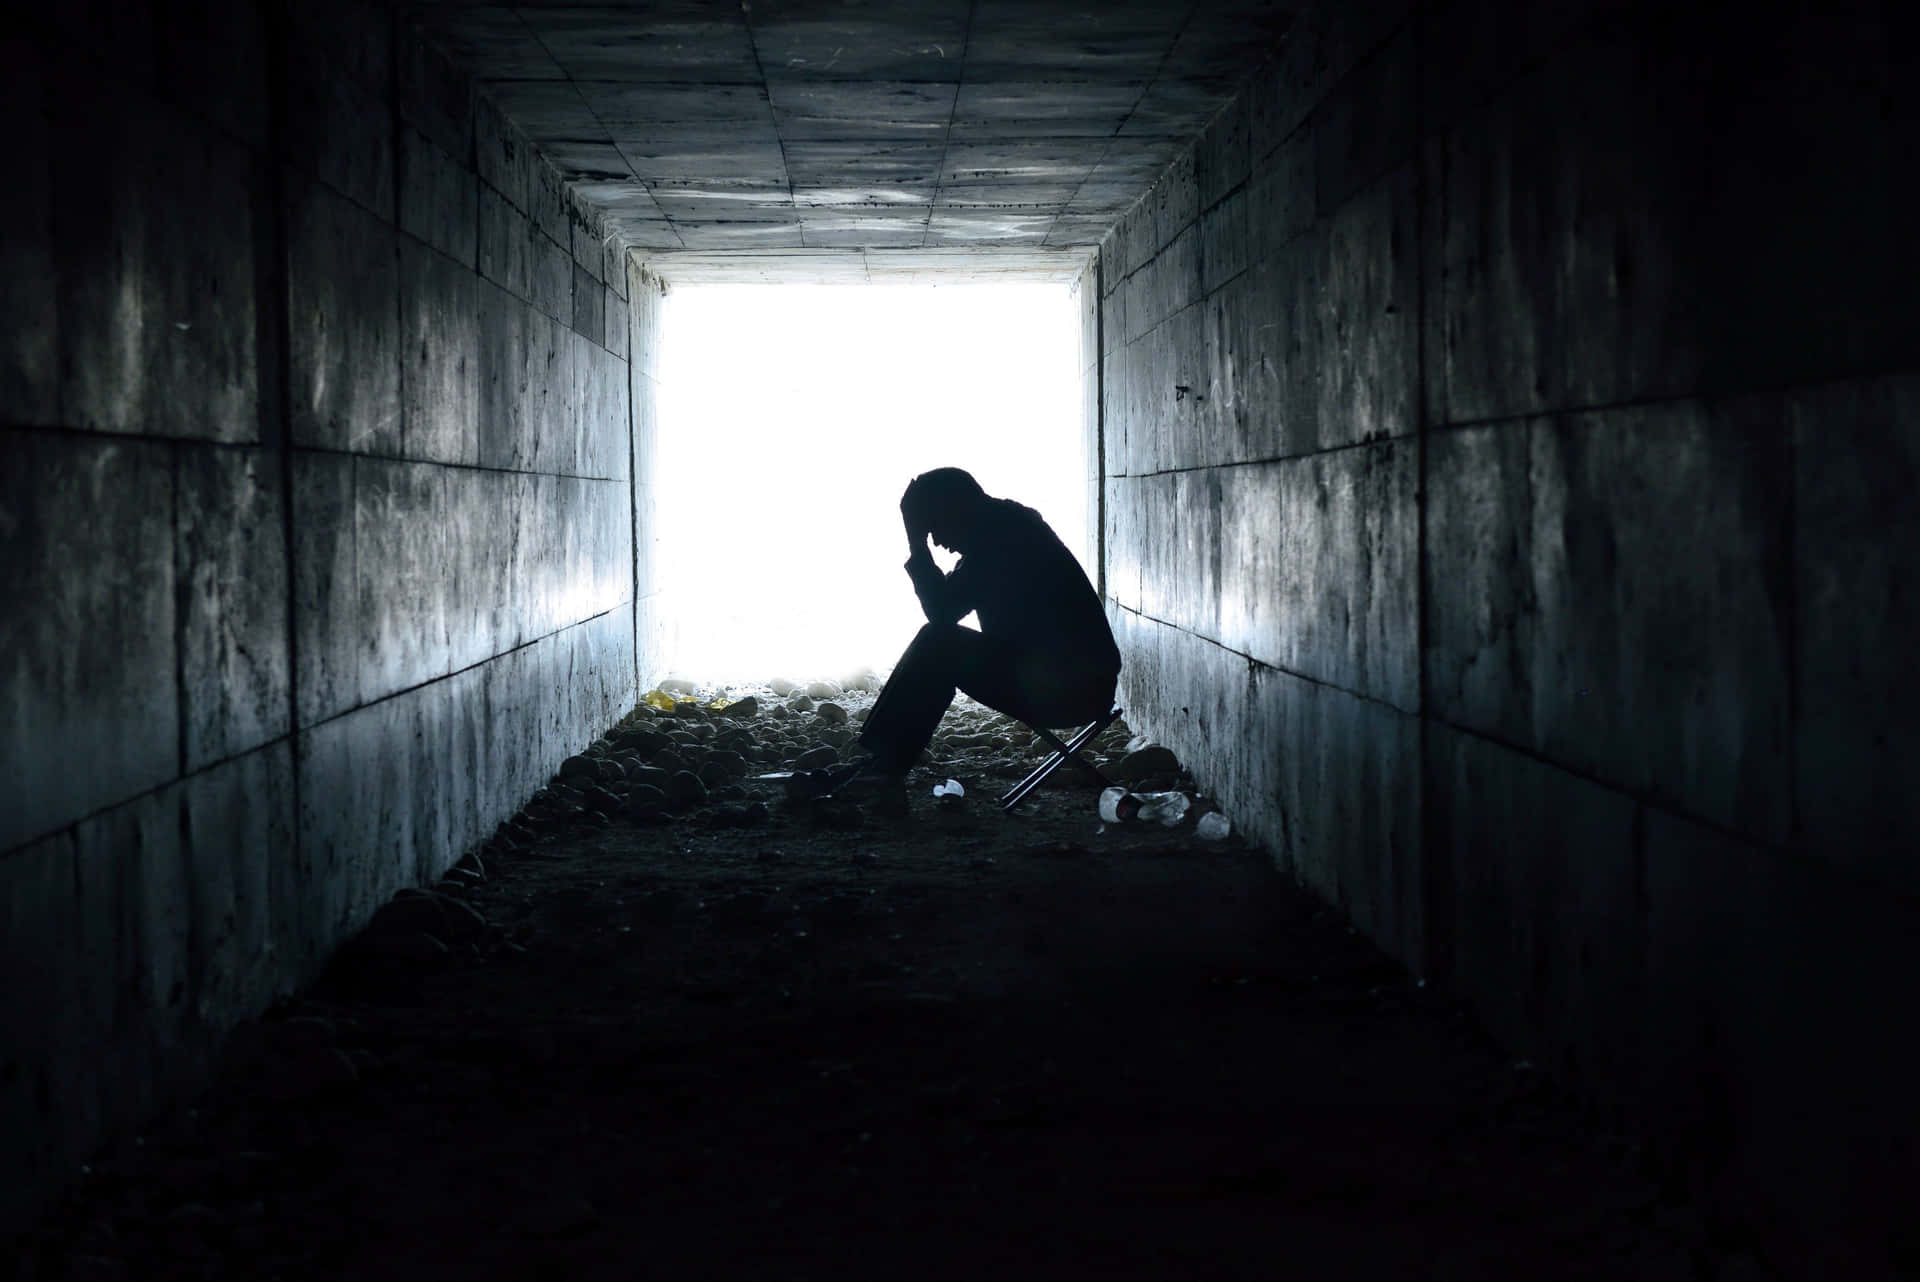 Immaginedi Una Silouhette Di Una Persona Triste In Un Tunnel